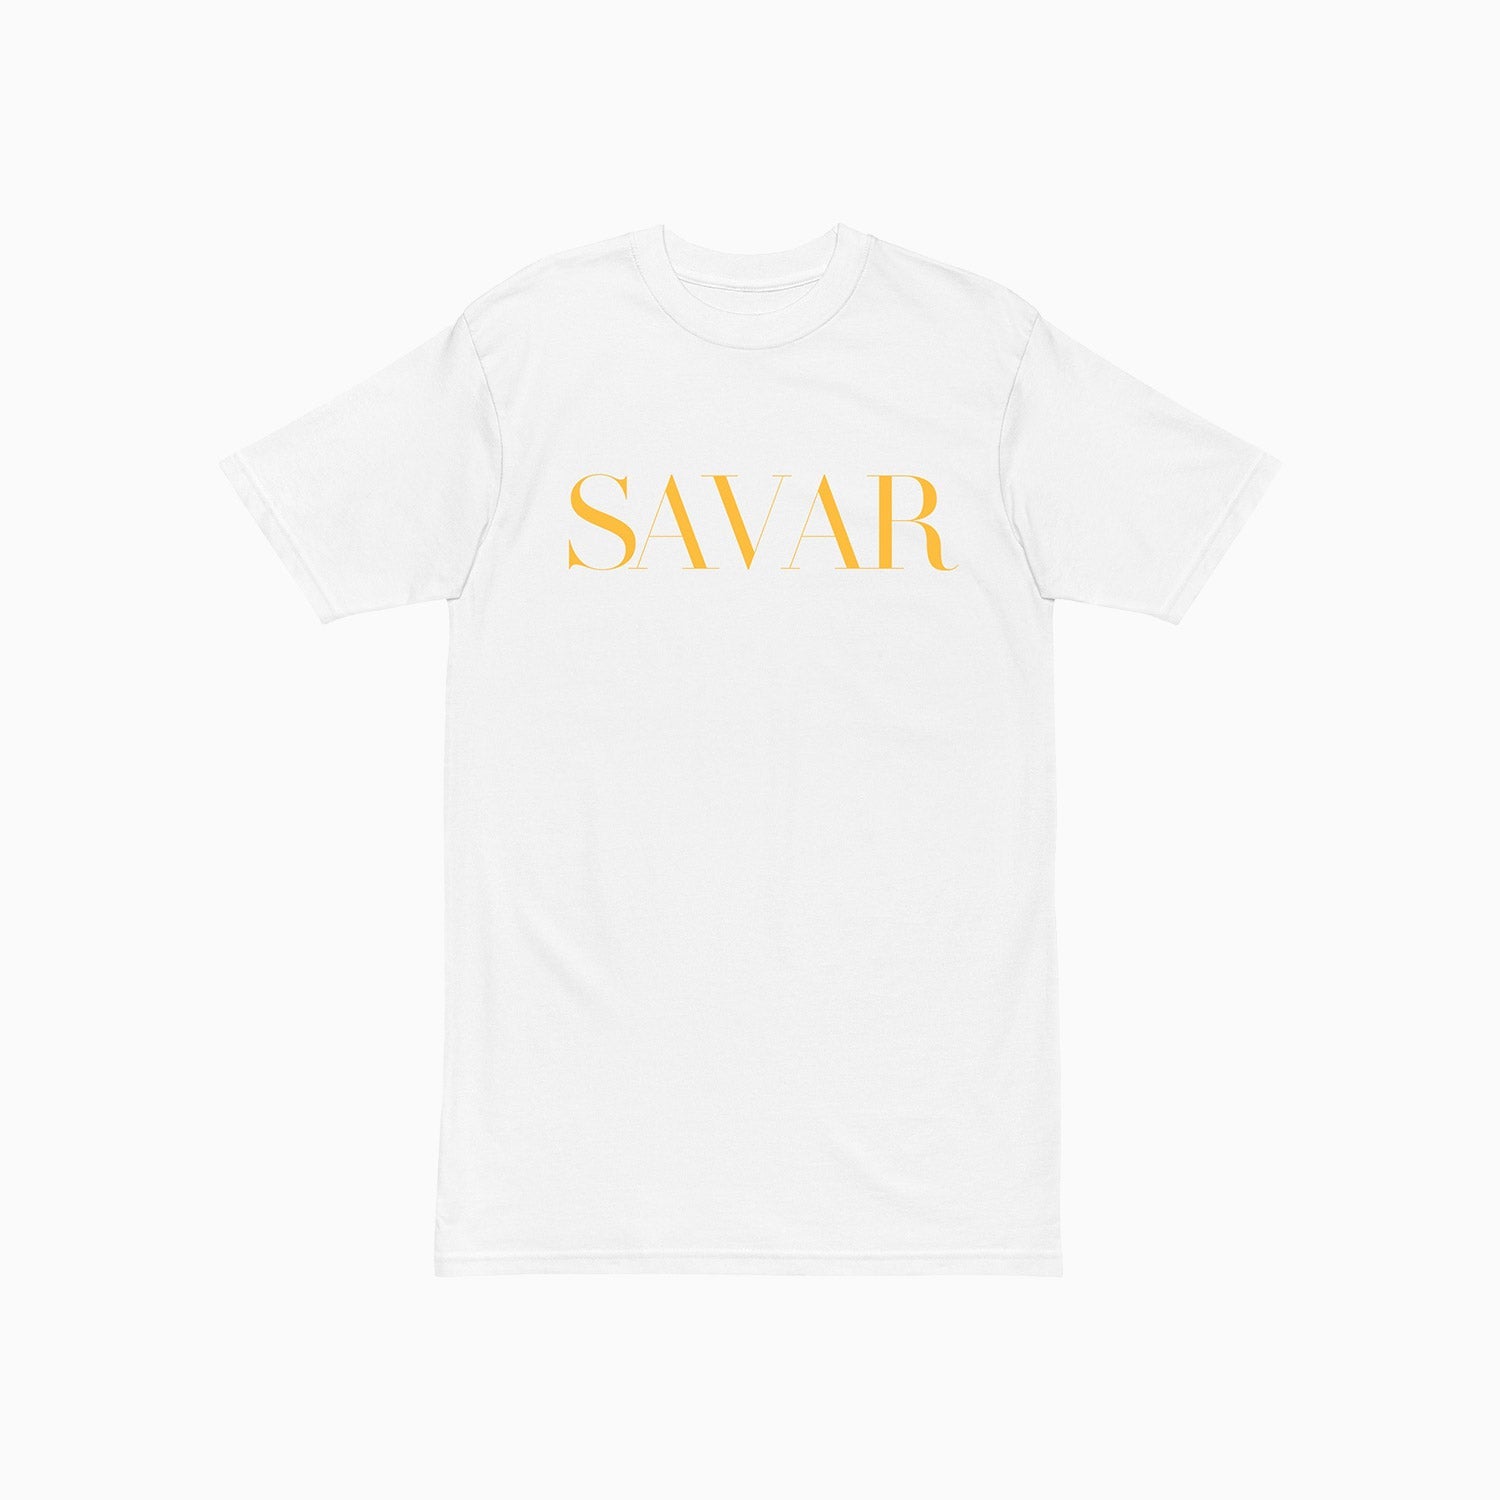 savar-mens-valentino-logo-printed-white-t-shirt-st229-100